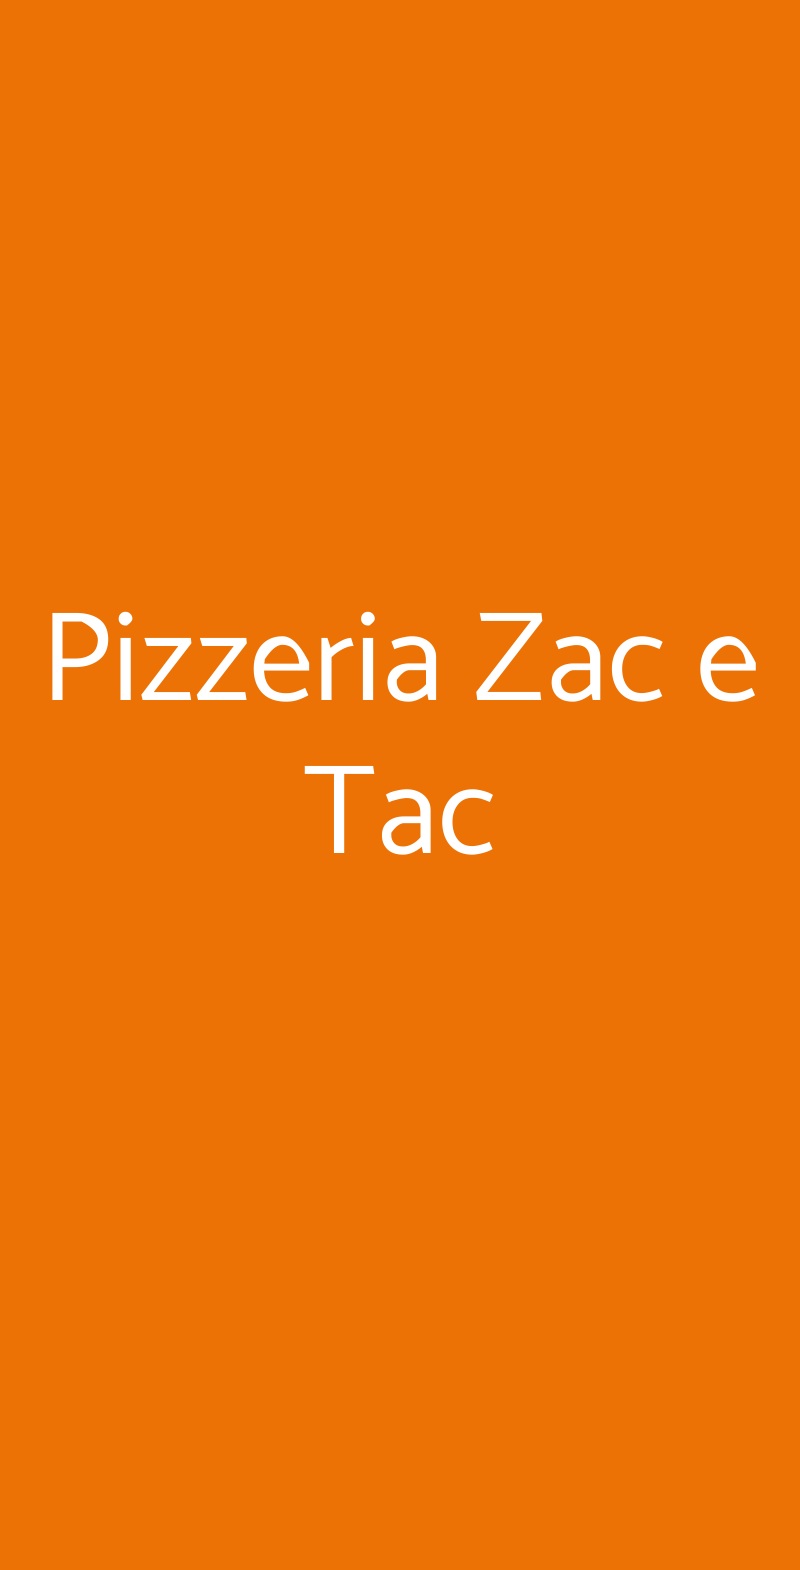 Pizzeria Zac e Tac Trento menù 1 pagina